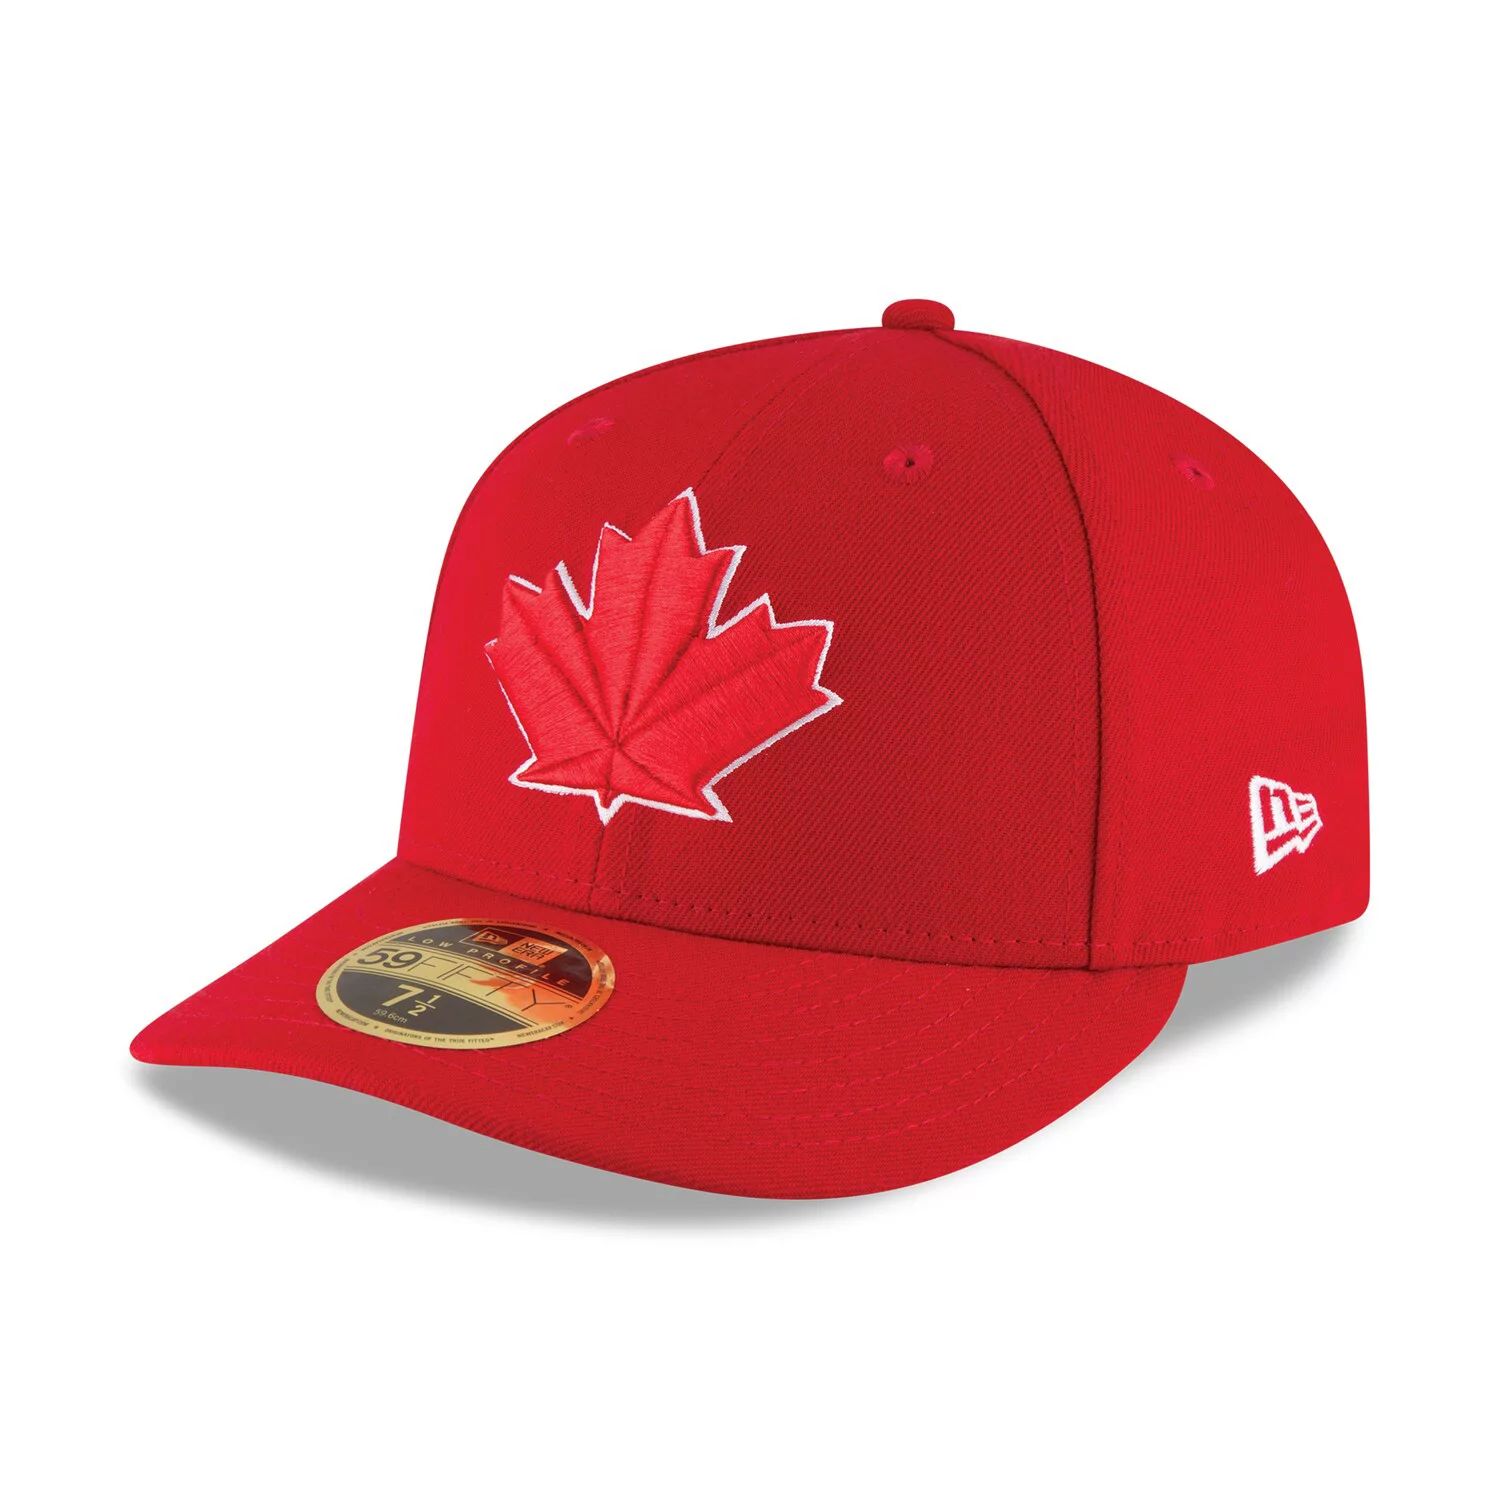 Мужская бейсболка New Era Scarlet Toronto Blue Jays 2017, аутентичная коллекция для поля, низкопрофильная 59FIFTY, приталенная шляпа крепление крыльев low profile